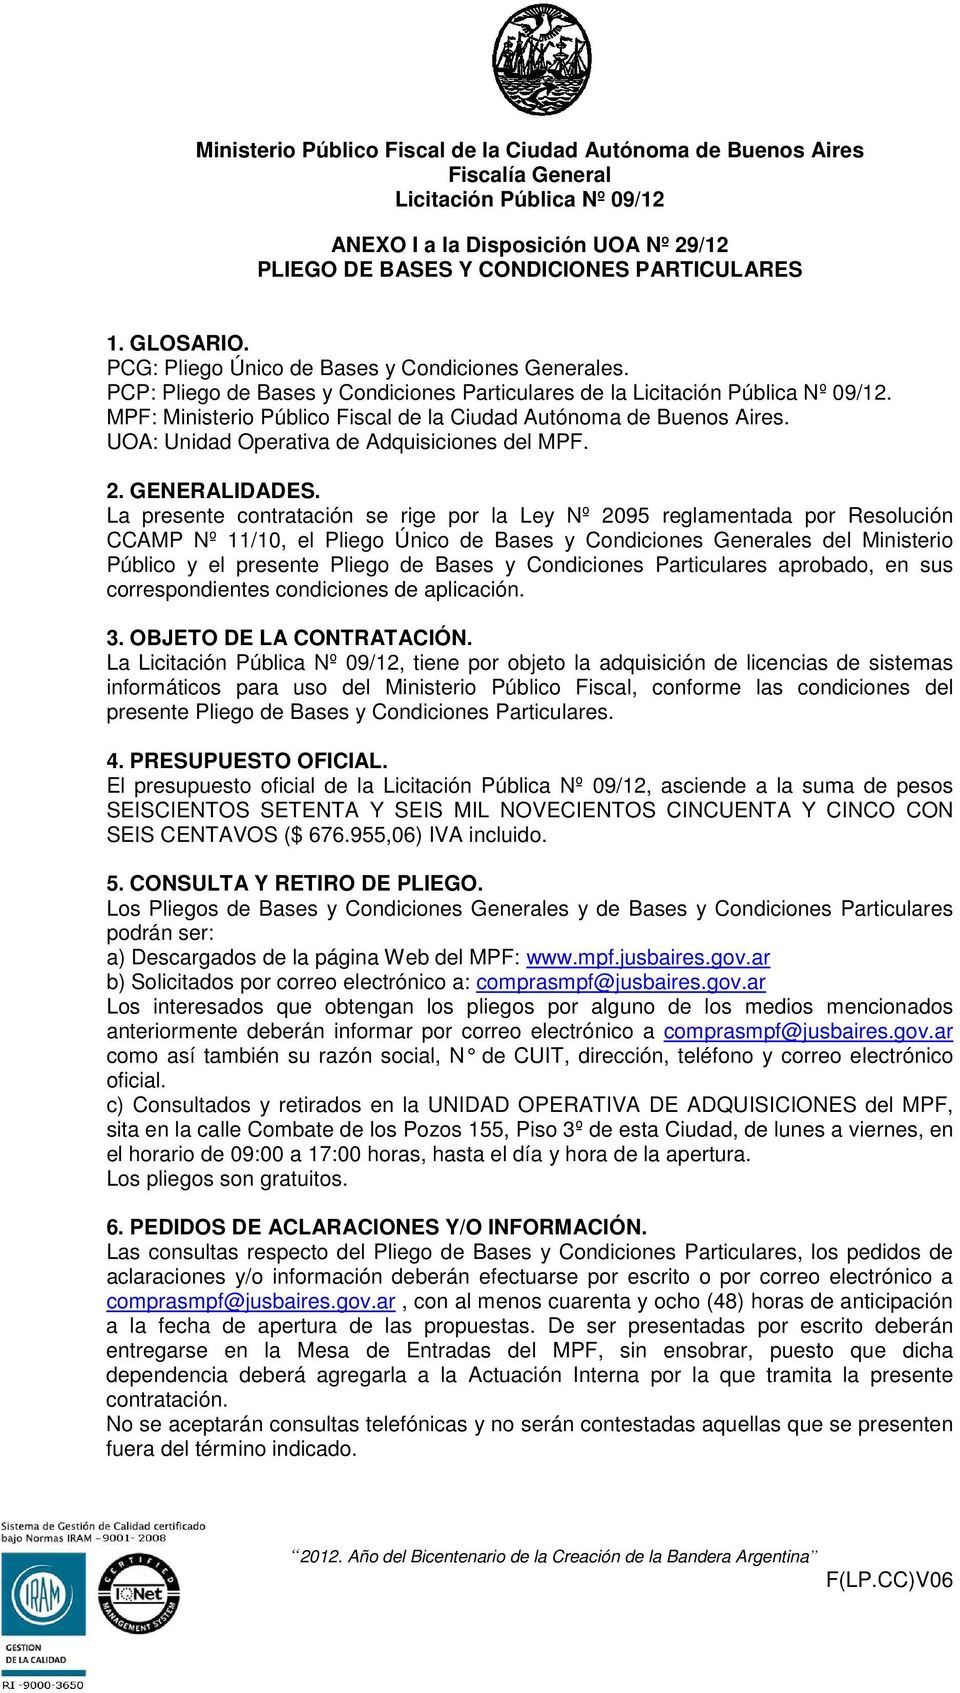 MPF: Ministerio Público Fiscal de la Ciudad Autónoma de Buenos Aires. UOA: Unidad Operativa de Adquisiciones del MPF. 2. GENERALIDADES.